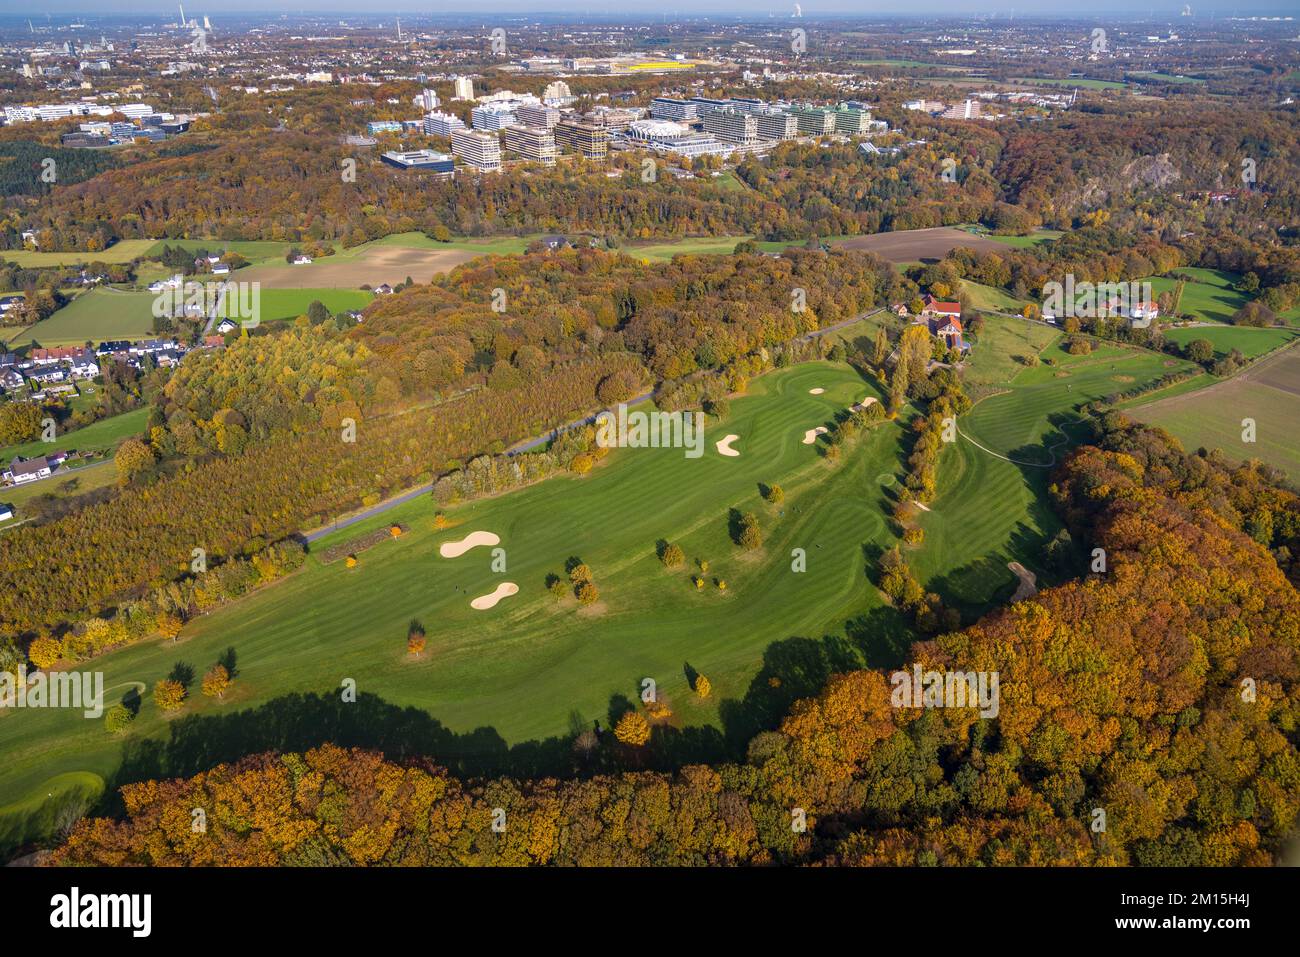 Vue aérienne, parcours de golf Bochum Golf Club et Université de Ruhr Bochum en arrière-plan dans le quartier Stiepel à Bochum, région de Ruhr, Rhénanie-du-Nord-Westp Banque D'Images